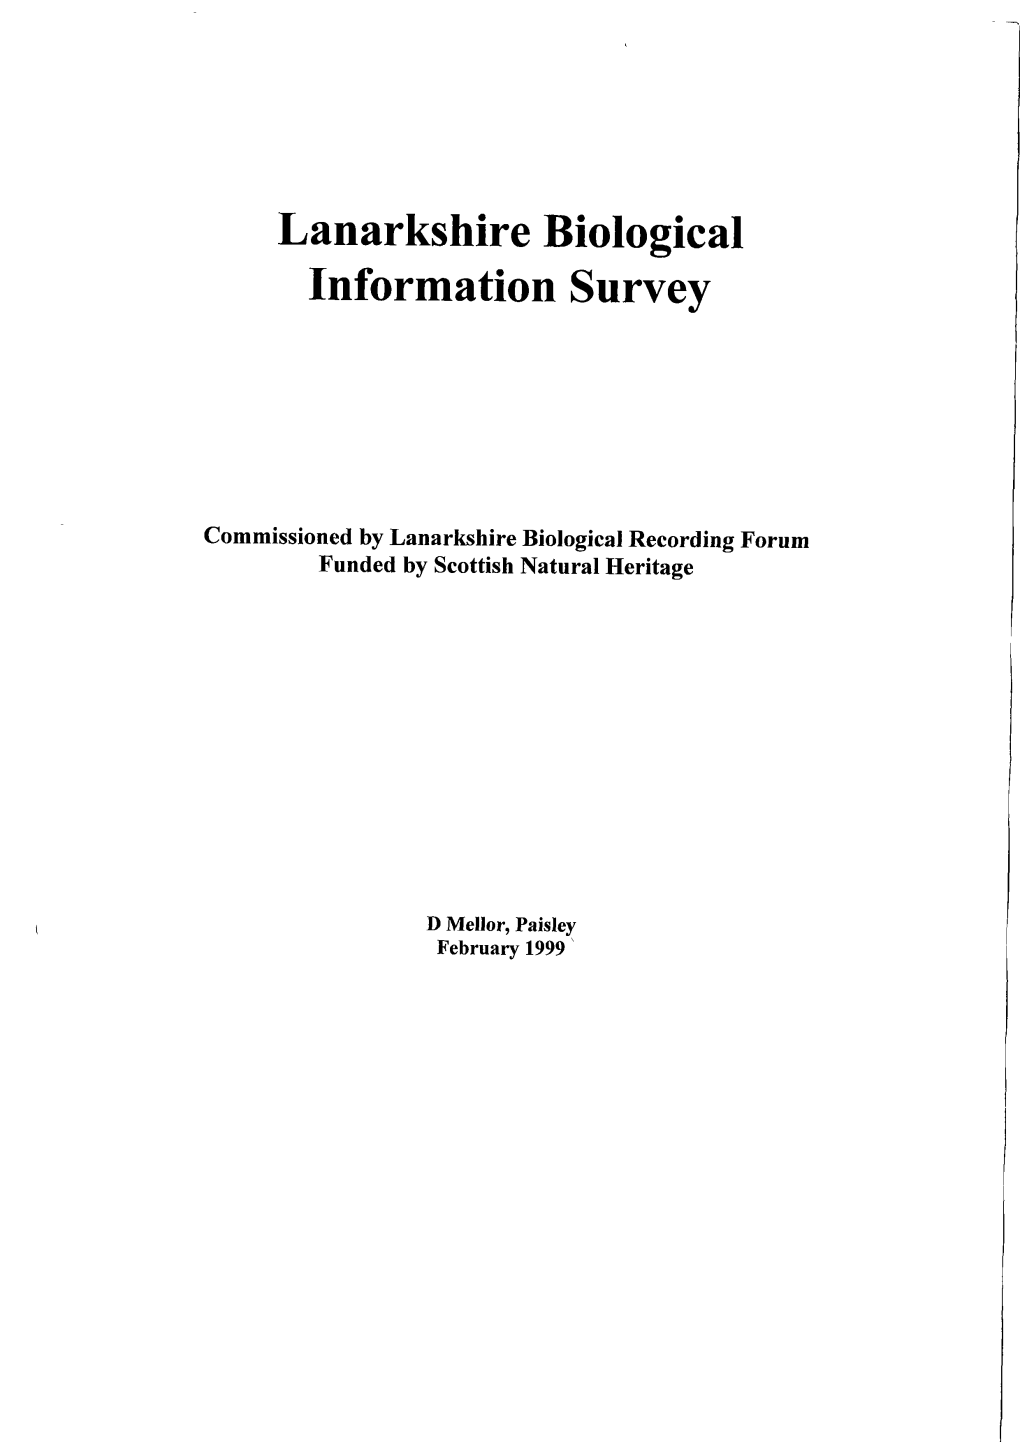 Lanarkshire Biological Information Survey